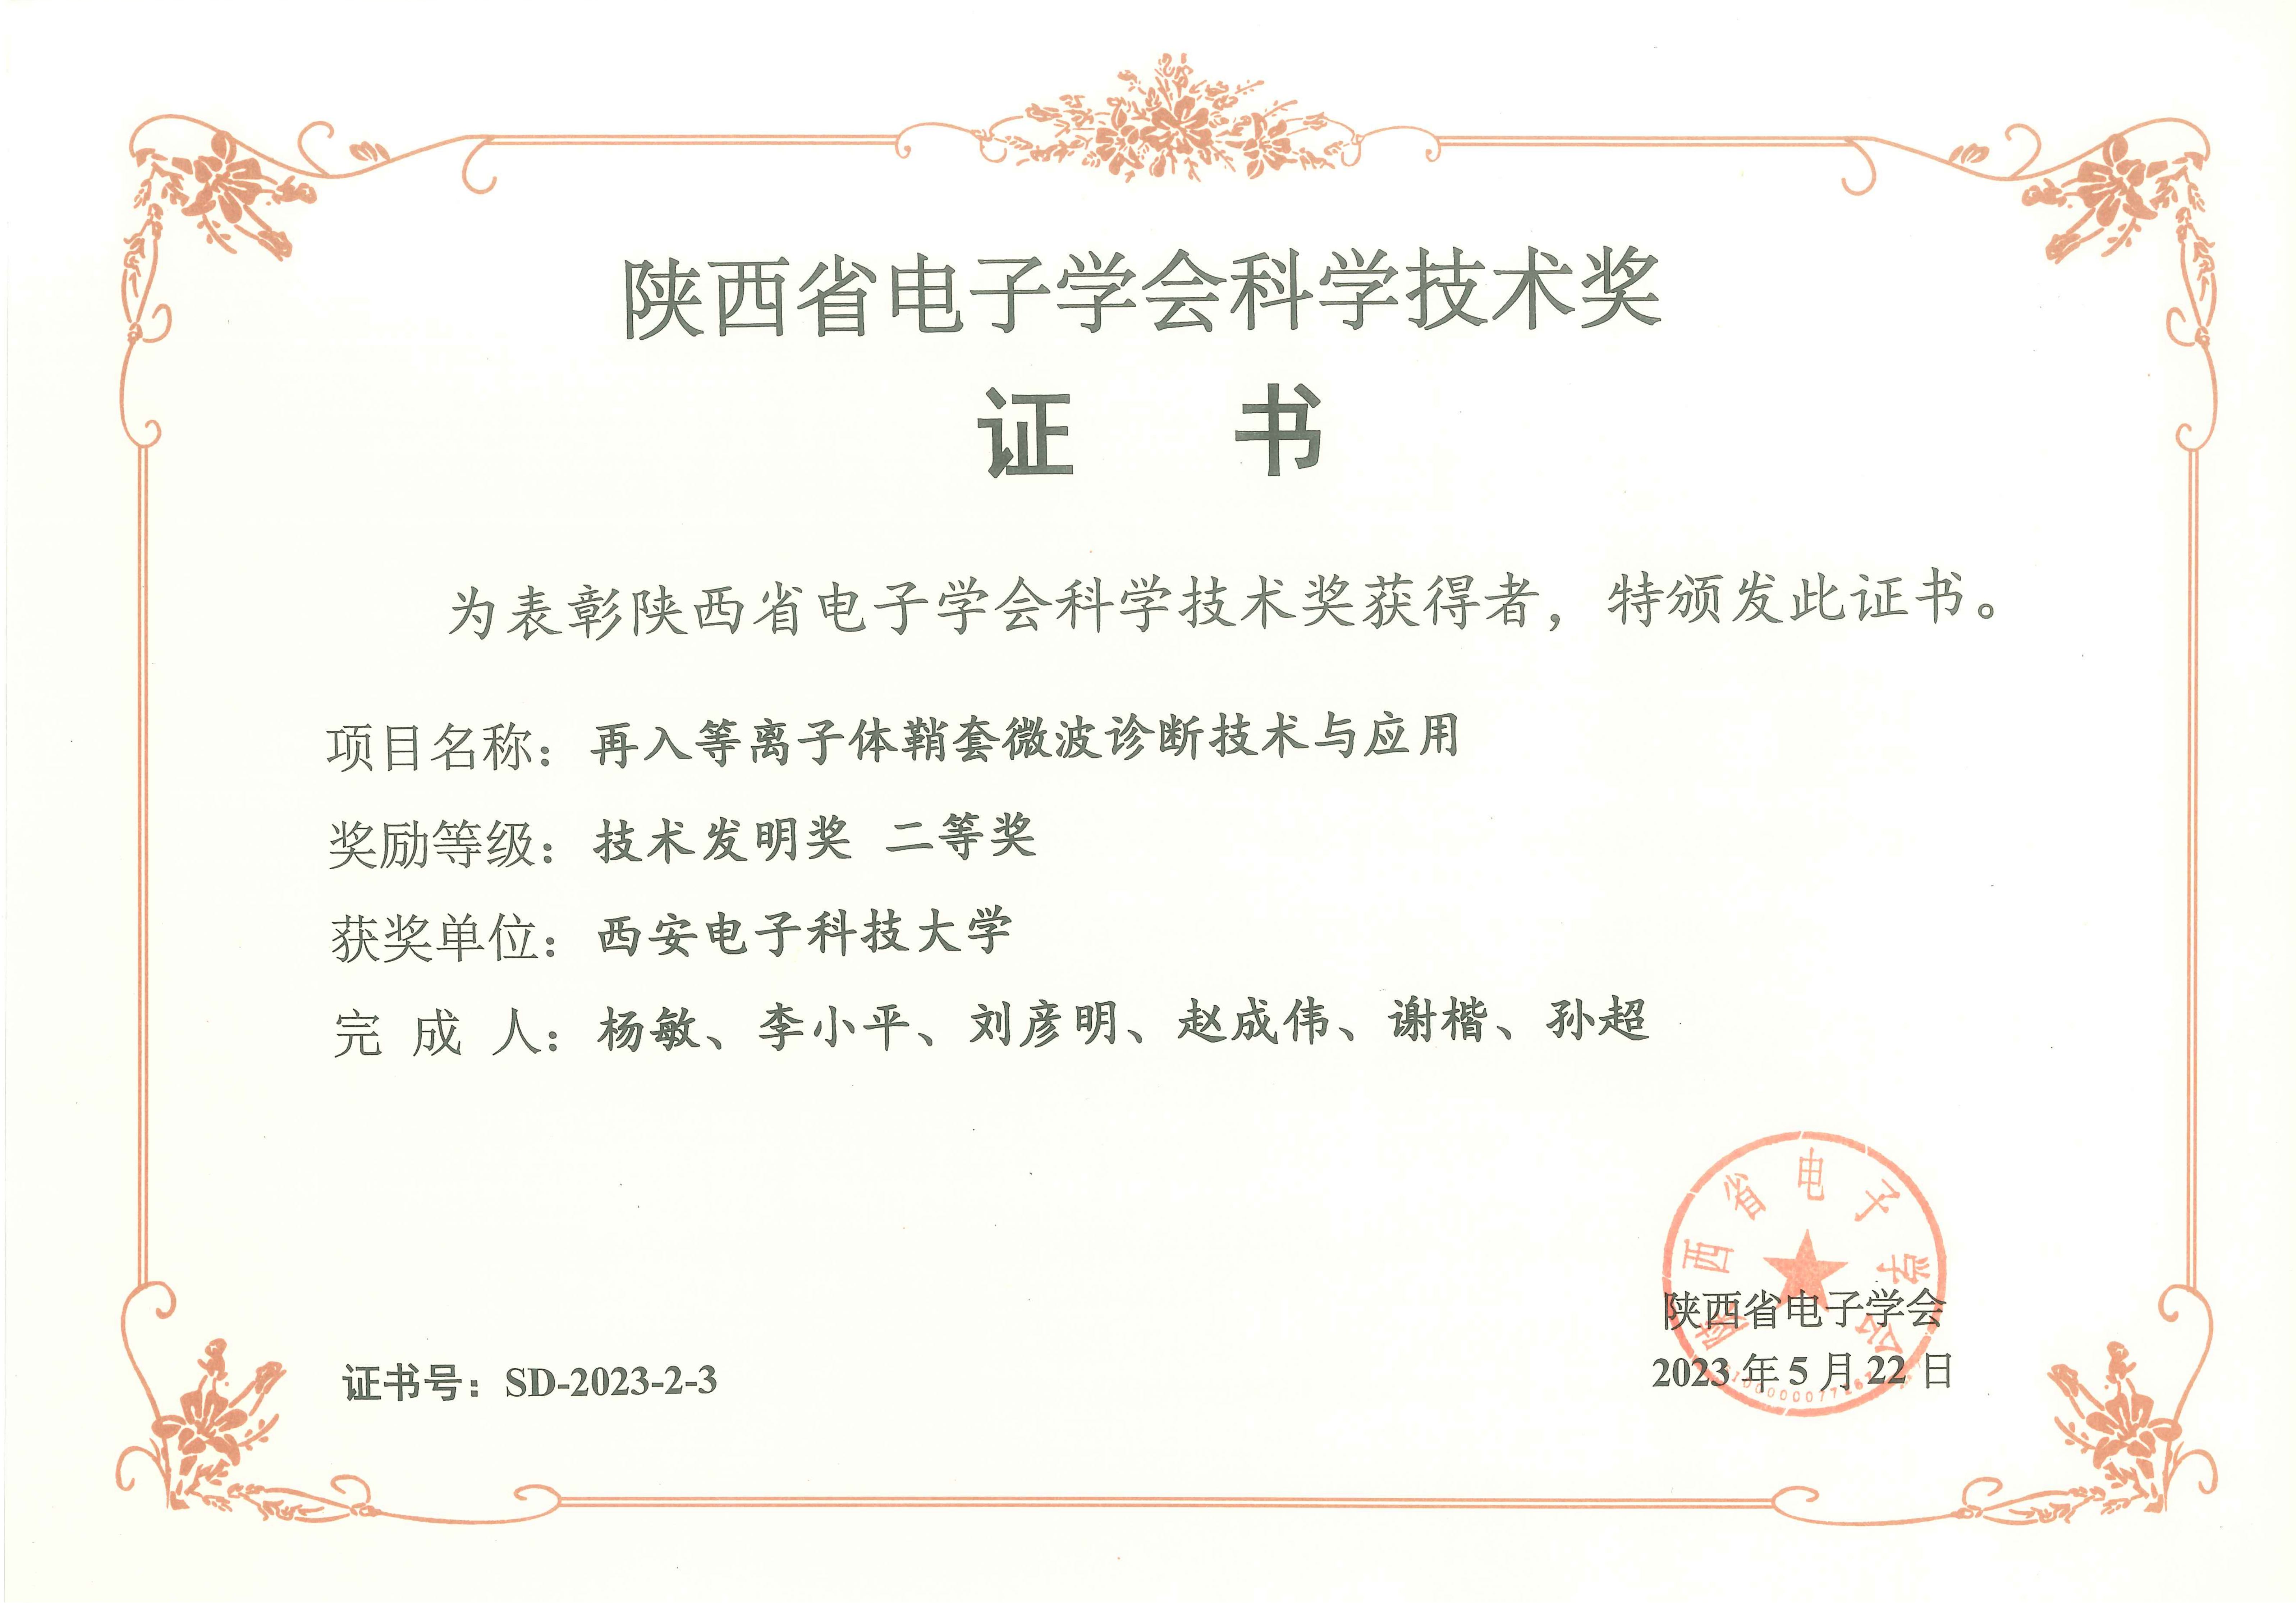 20230530-空间学院MCI团队荣获陕西省电子学会技术发明二等奖.png